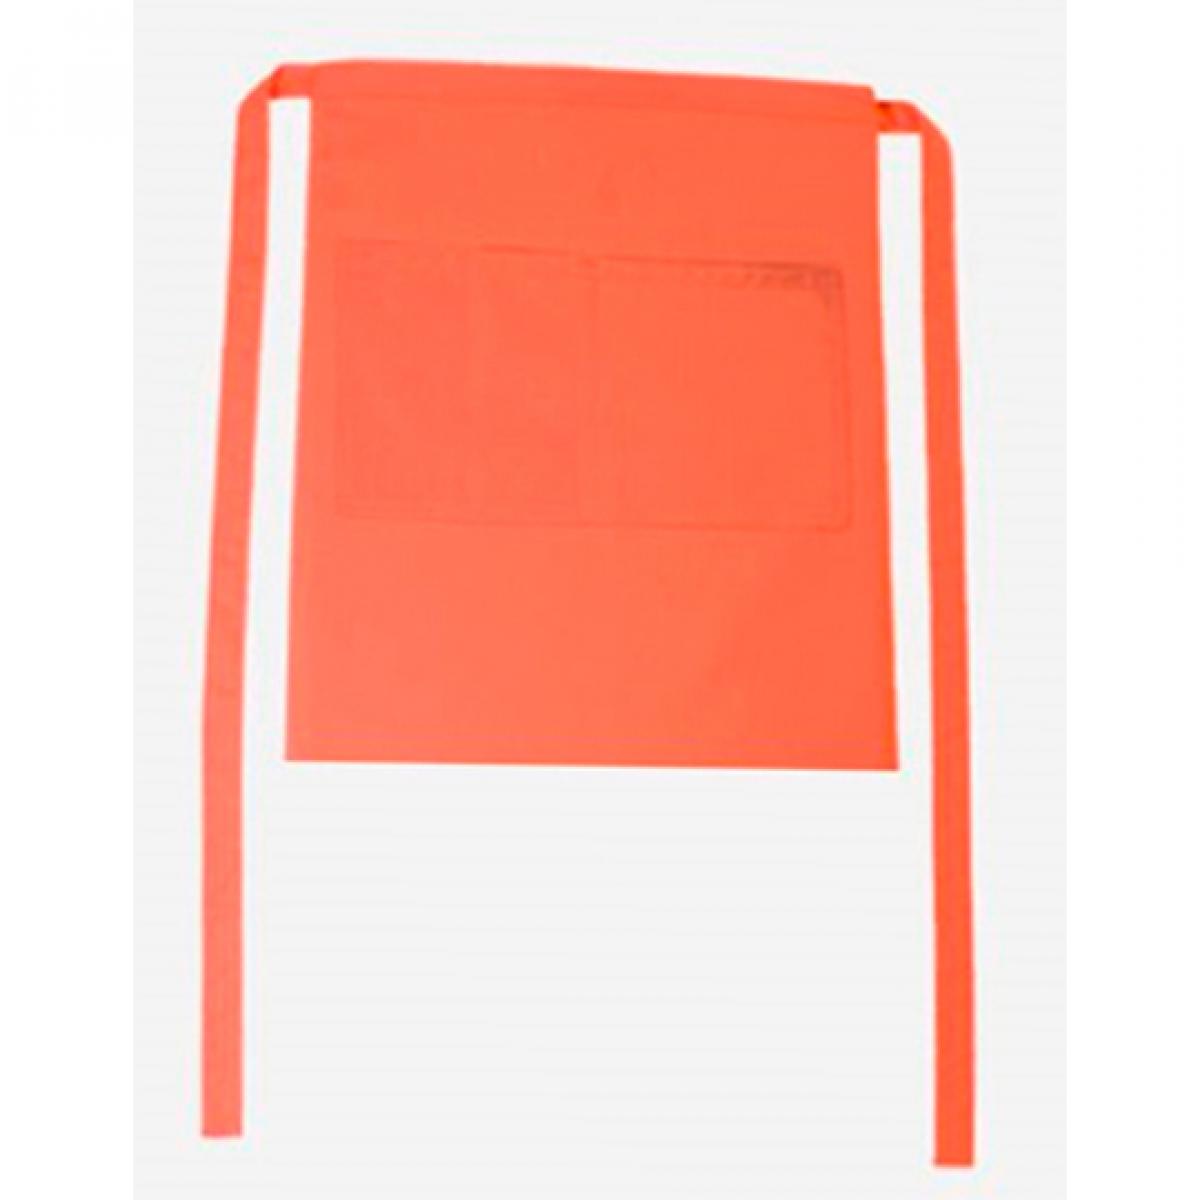 Hersteller: CG Workwear Herstellernummer: 01262-01 Artikelbezeichnung: Bistroschürze Roma Bag 50 x 78 cm Farbe: Orange